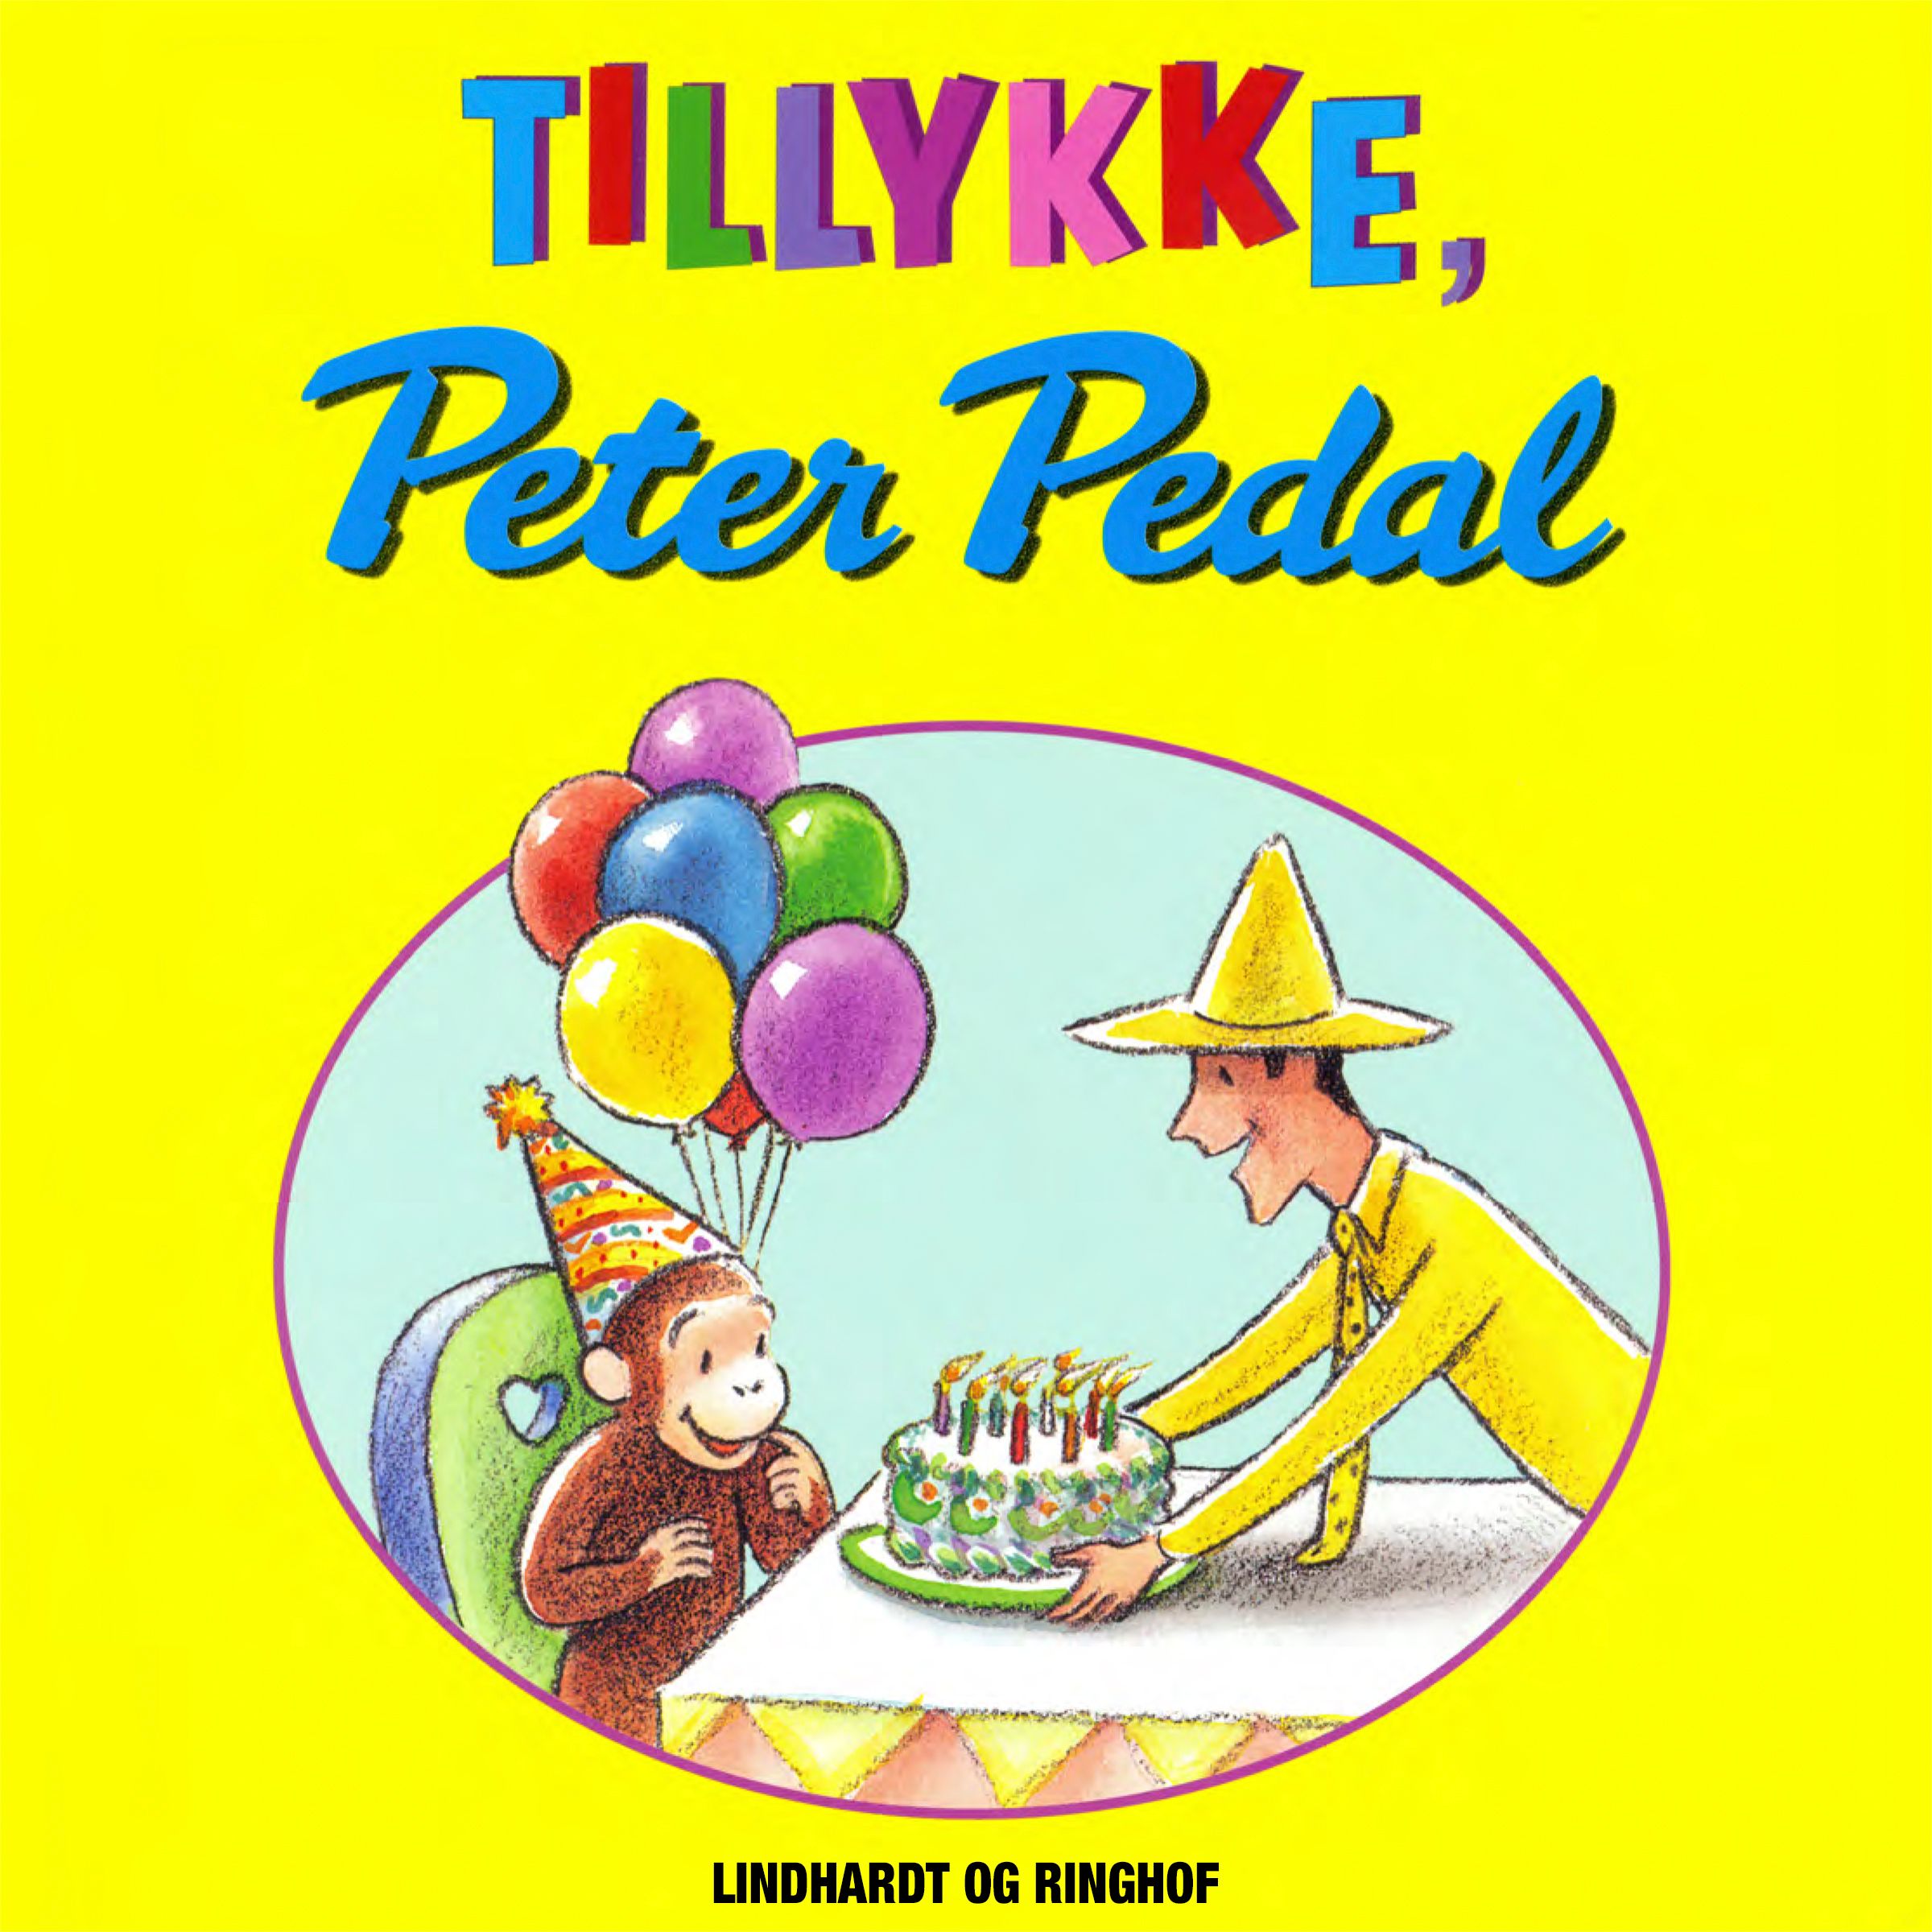 Tillykke, Peter Pedal, audiobook by Margret Og H.a. Rey